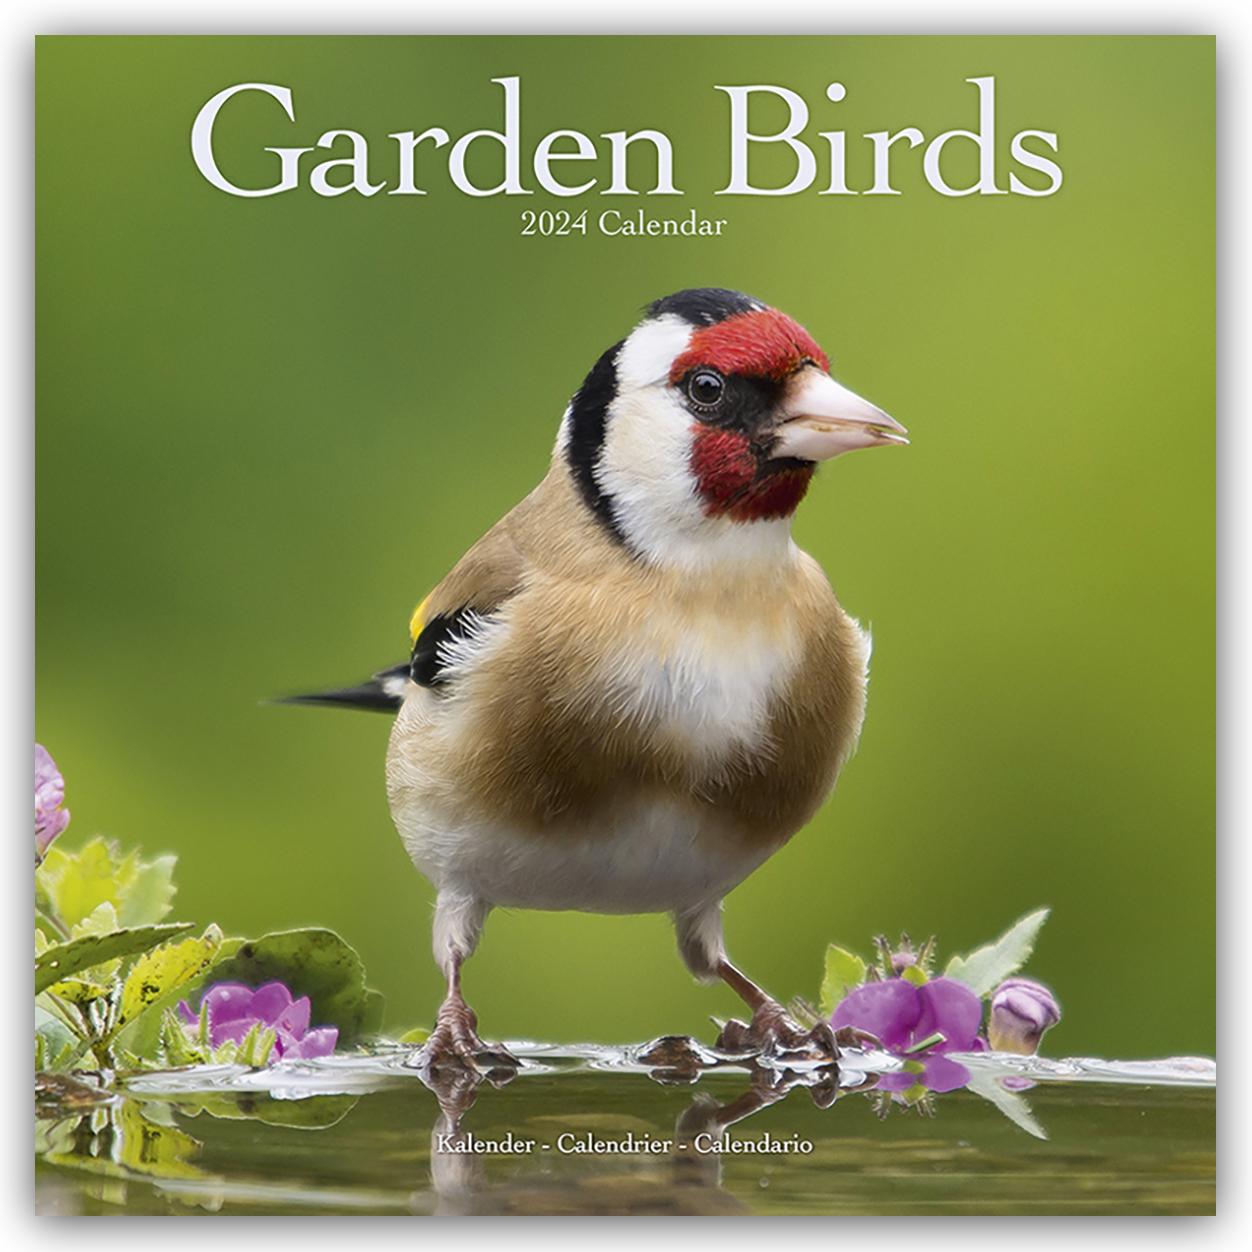 Kalendarz/Pamiętnik Garden Birds Calendar 2024  Square Birds Wall Calendar - 16 Month 